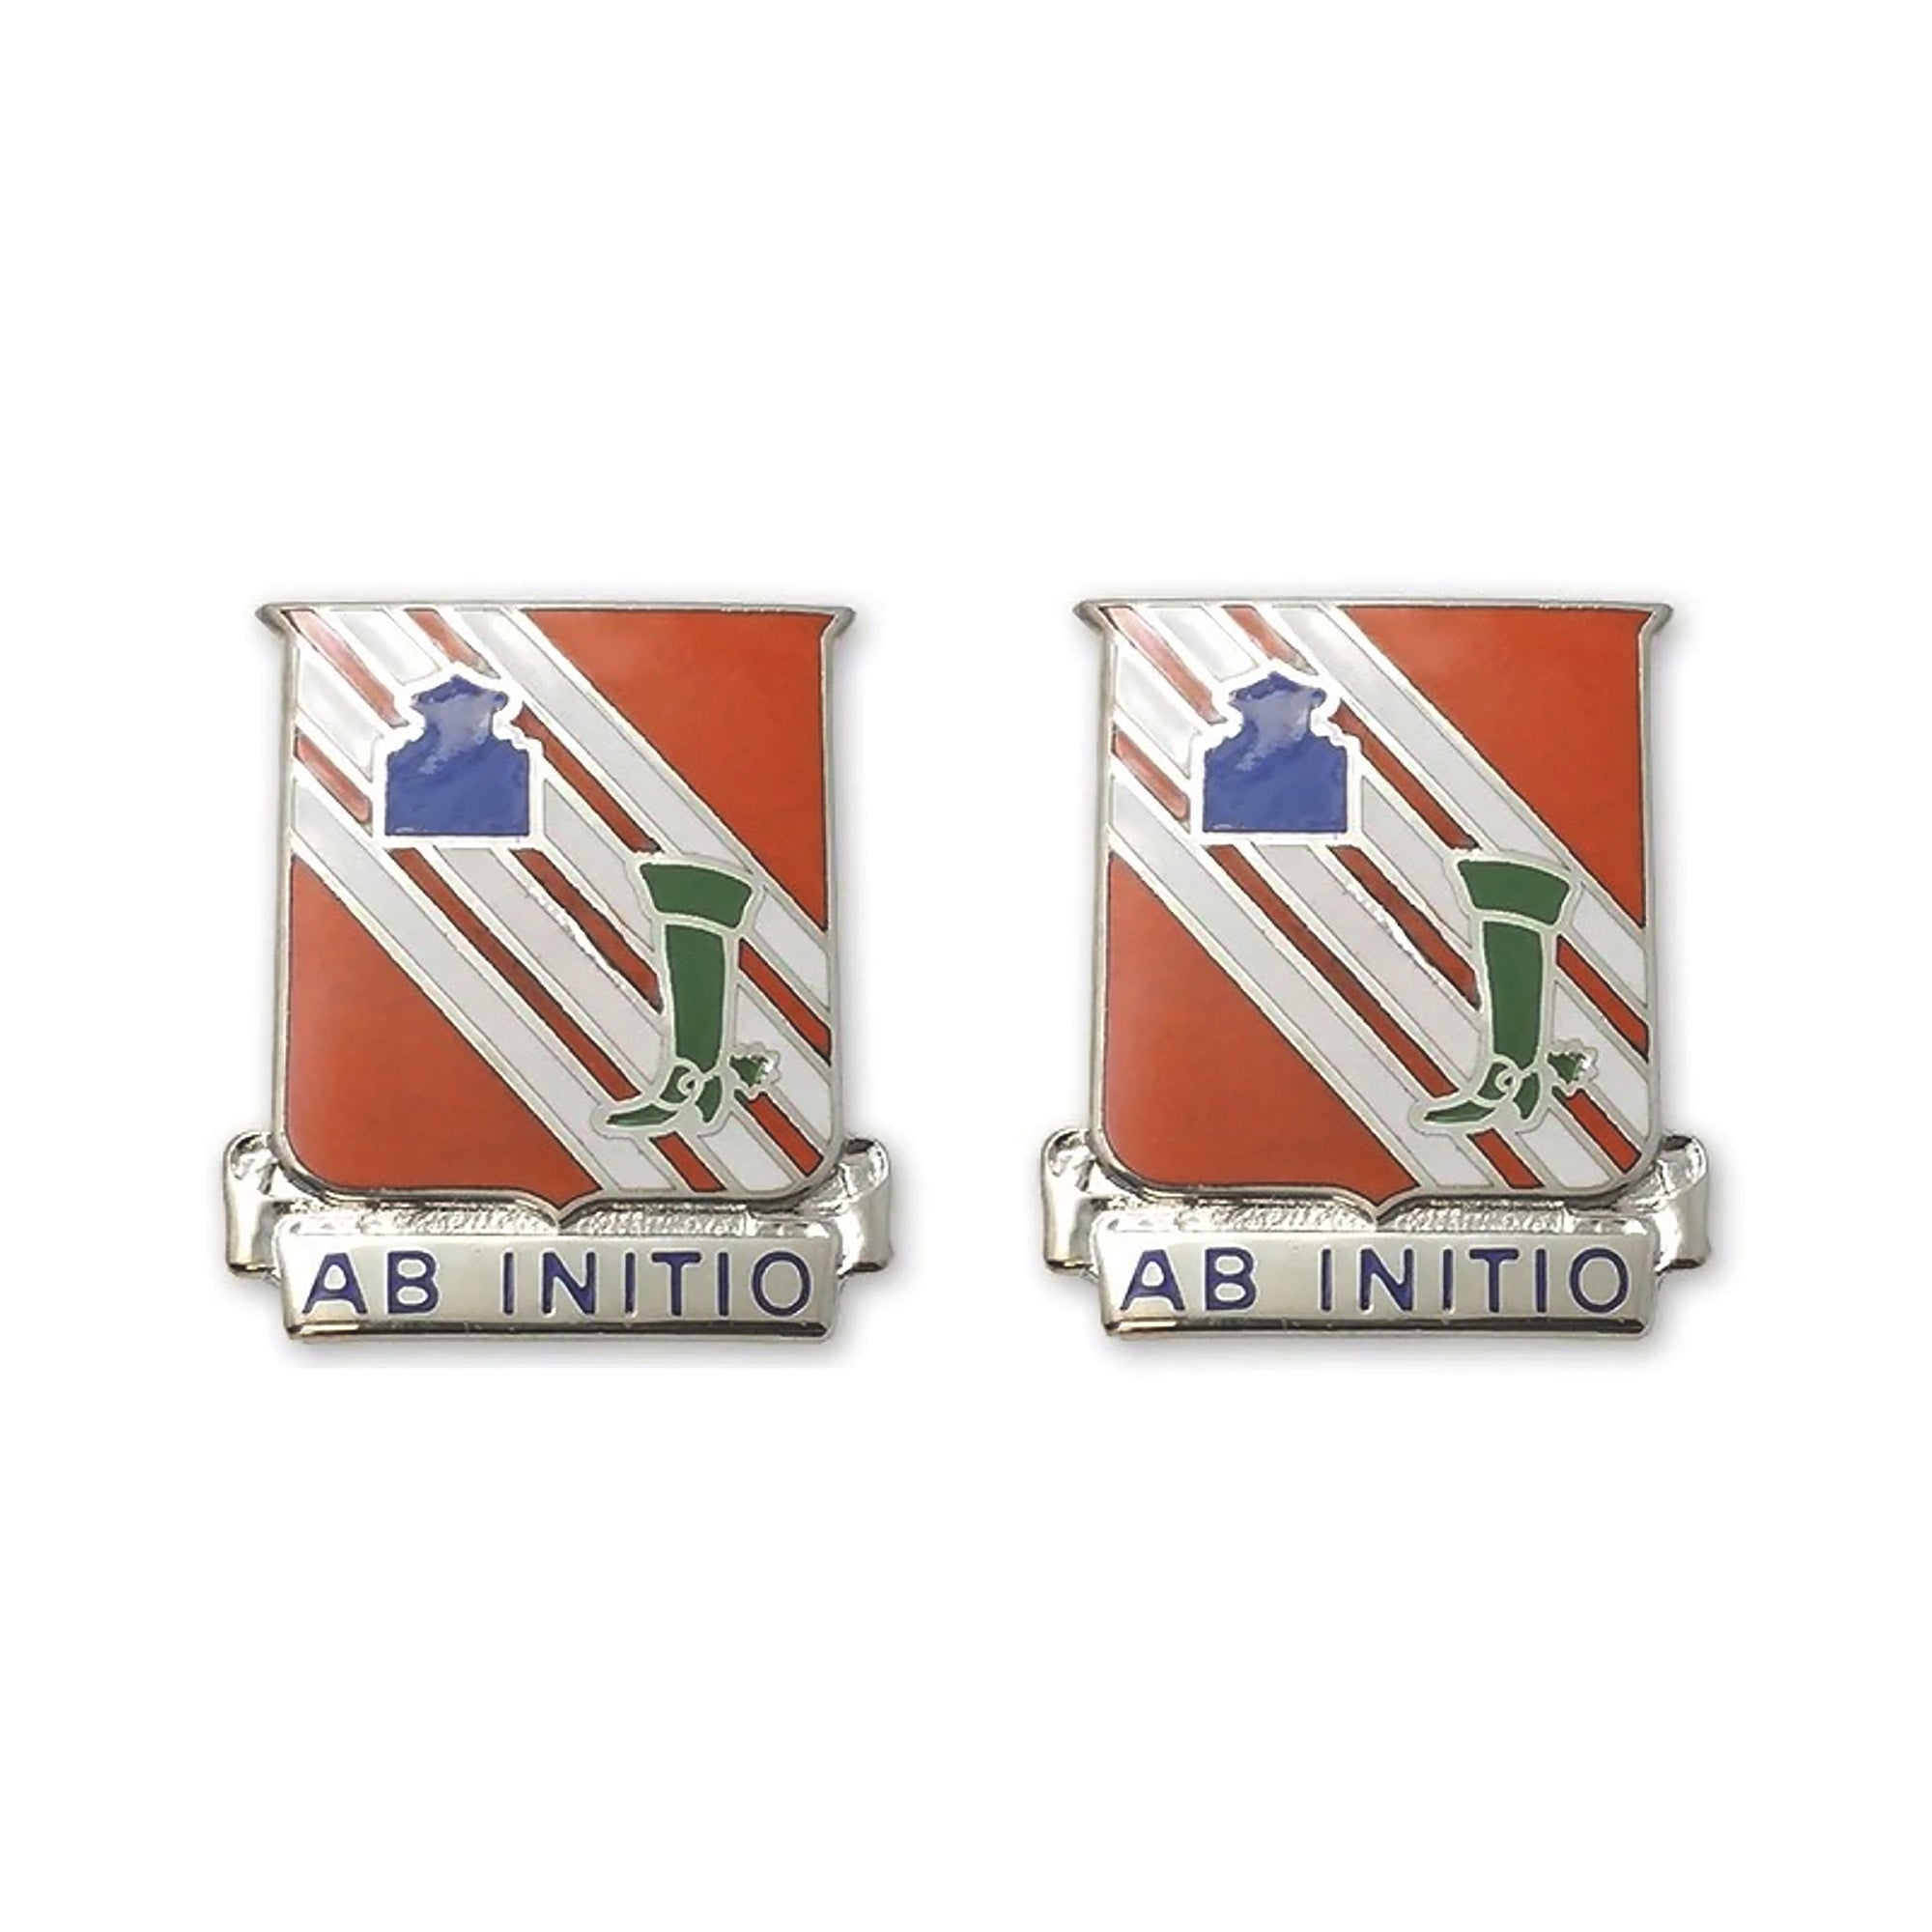 63rd Signal Battalion Crest "Ab Initio" (pair).